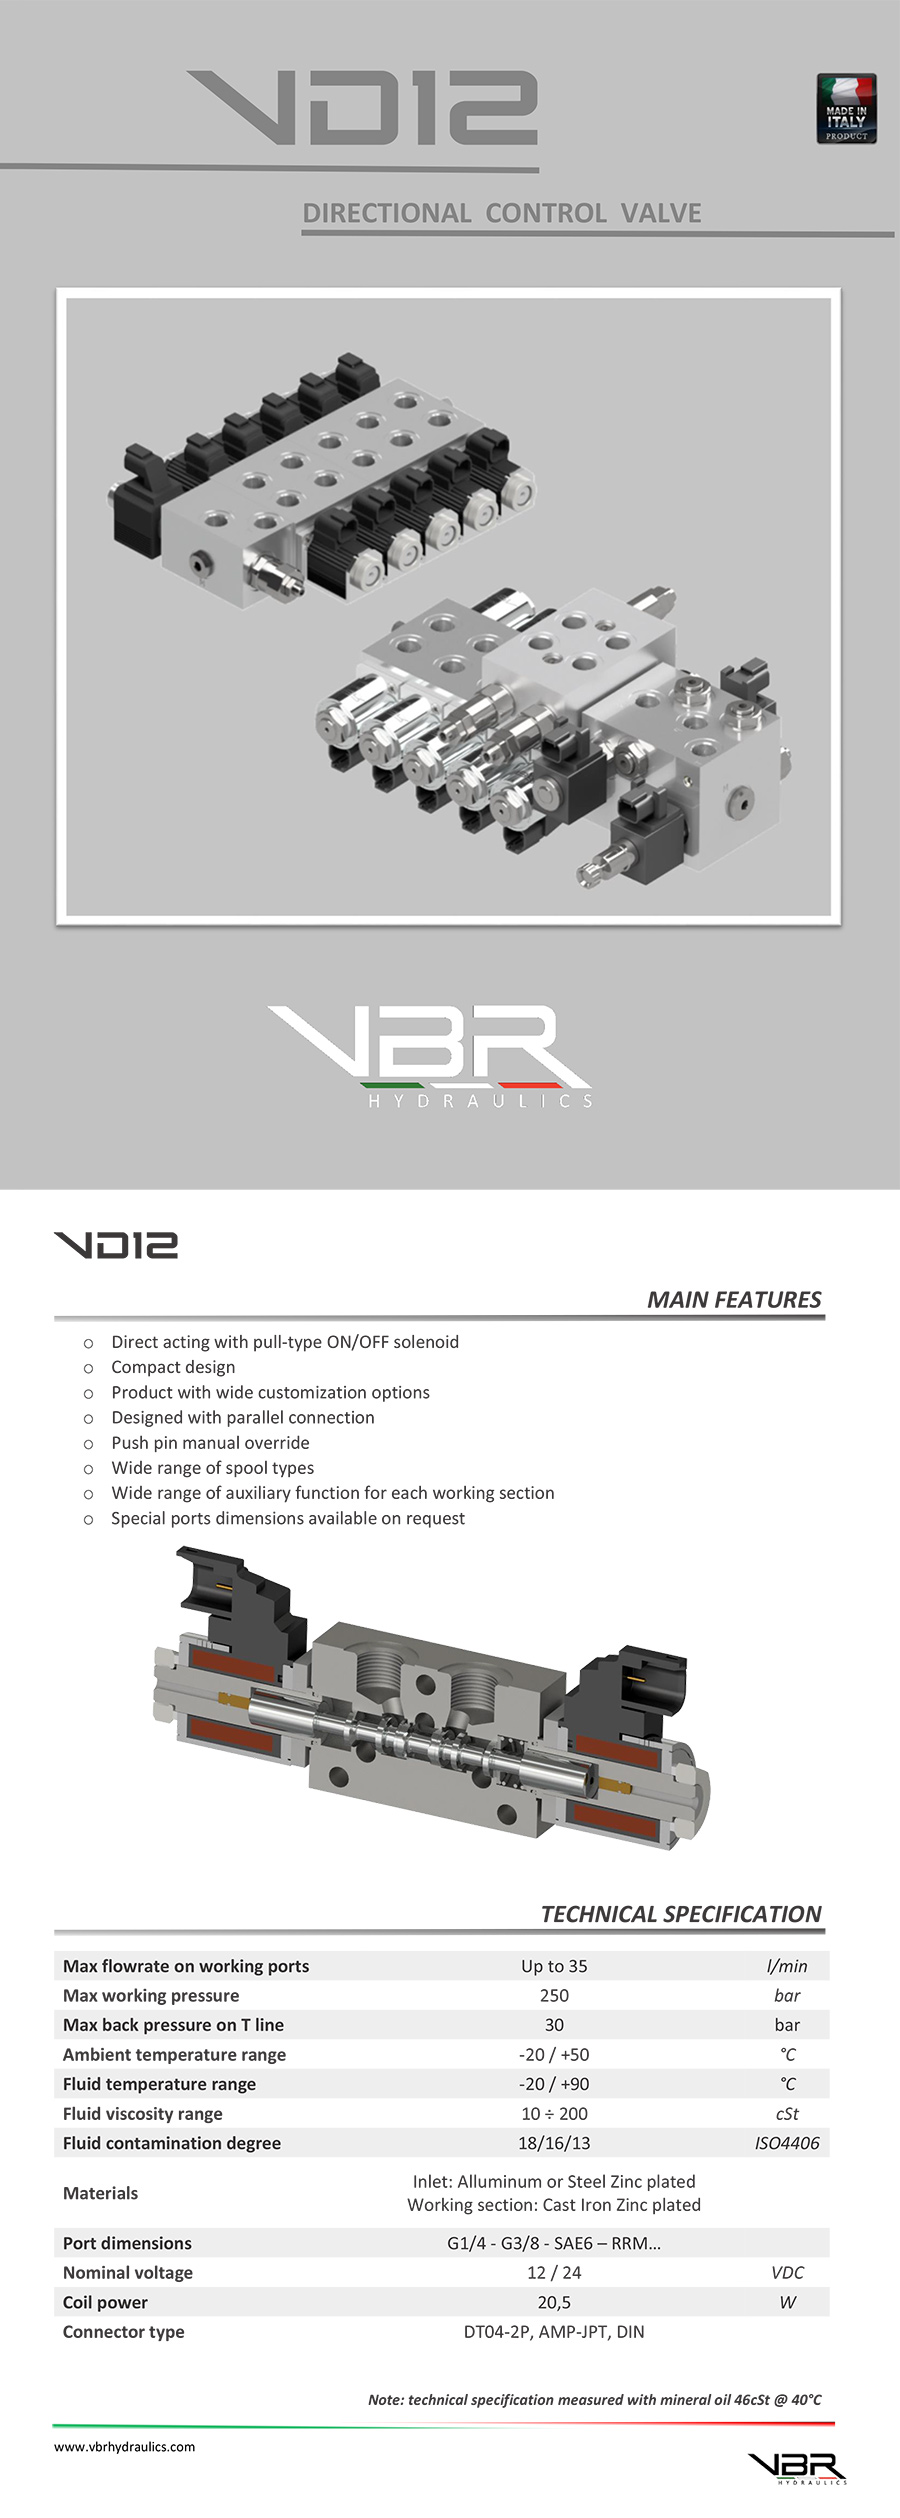 Flyer VD12 2019 rev(图1)